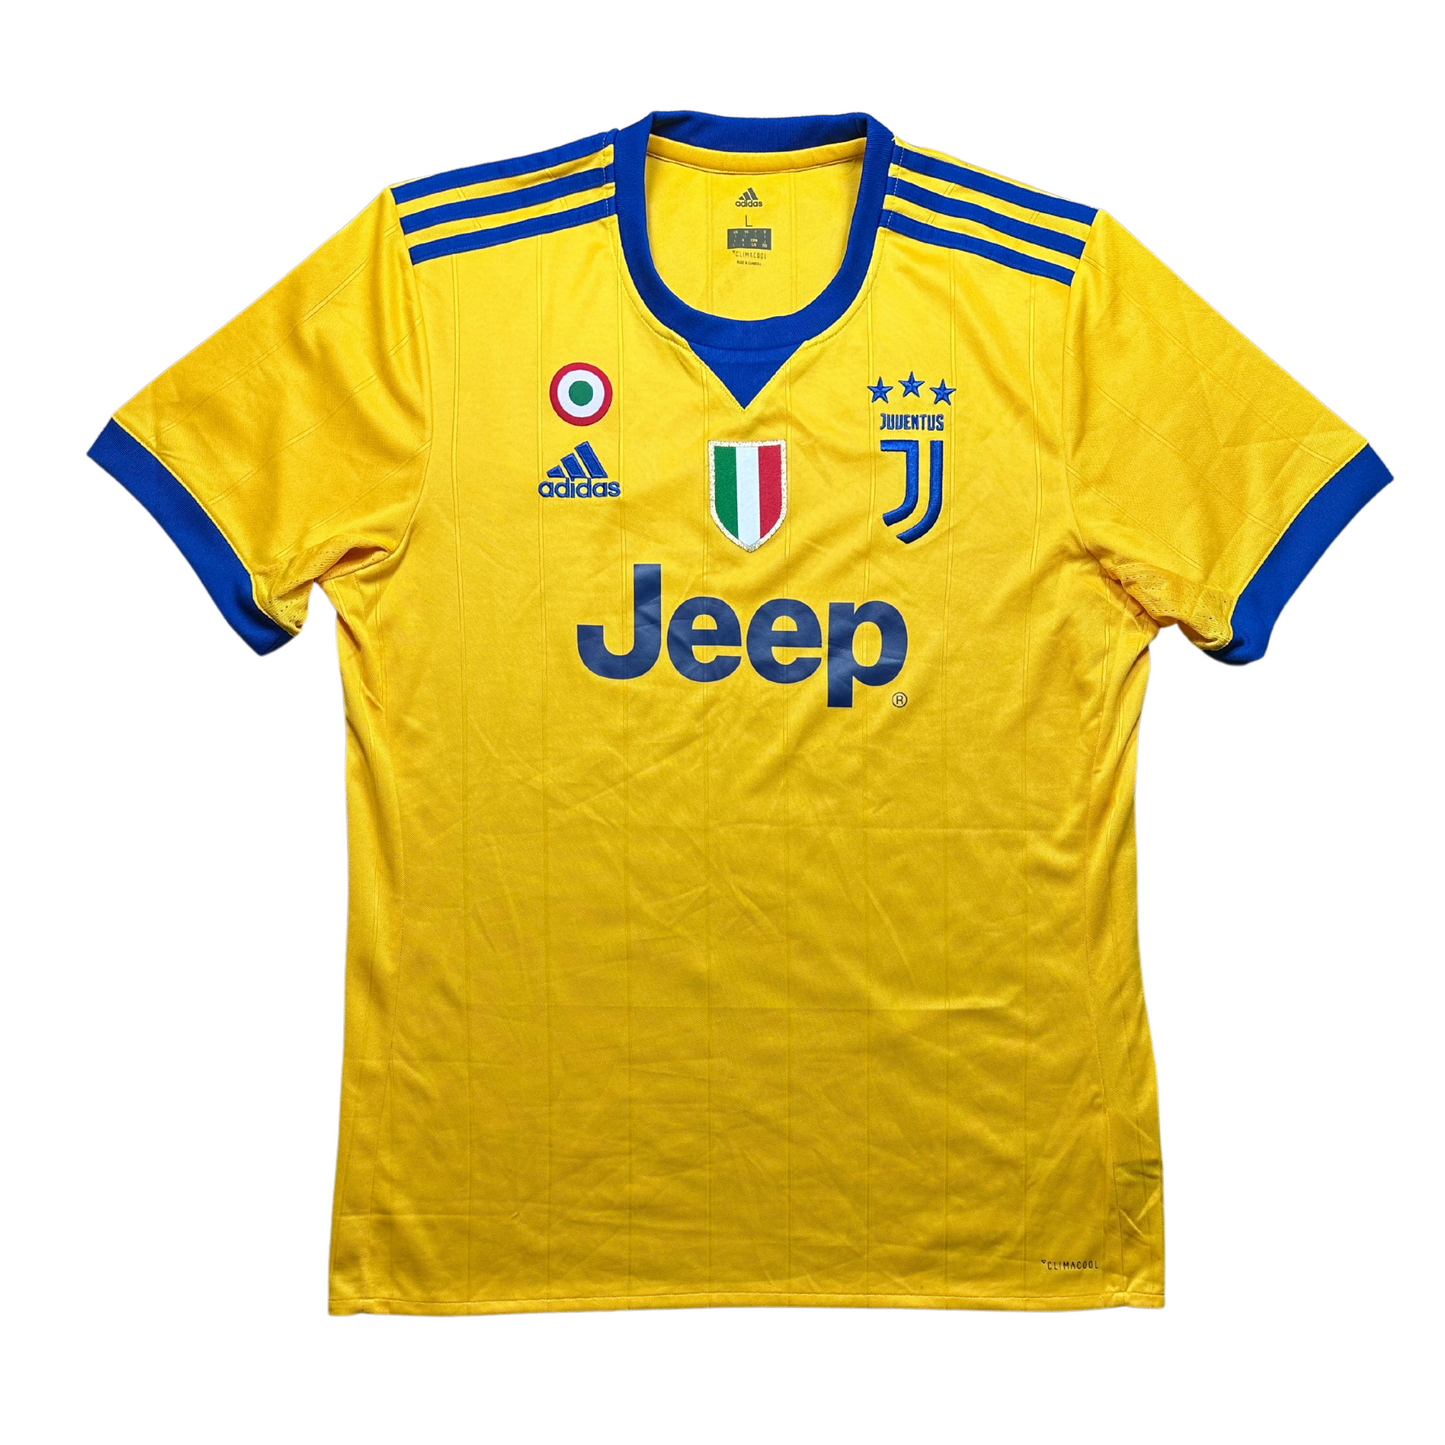 Juventus 2017/2018 Away Football Shirt